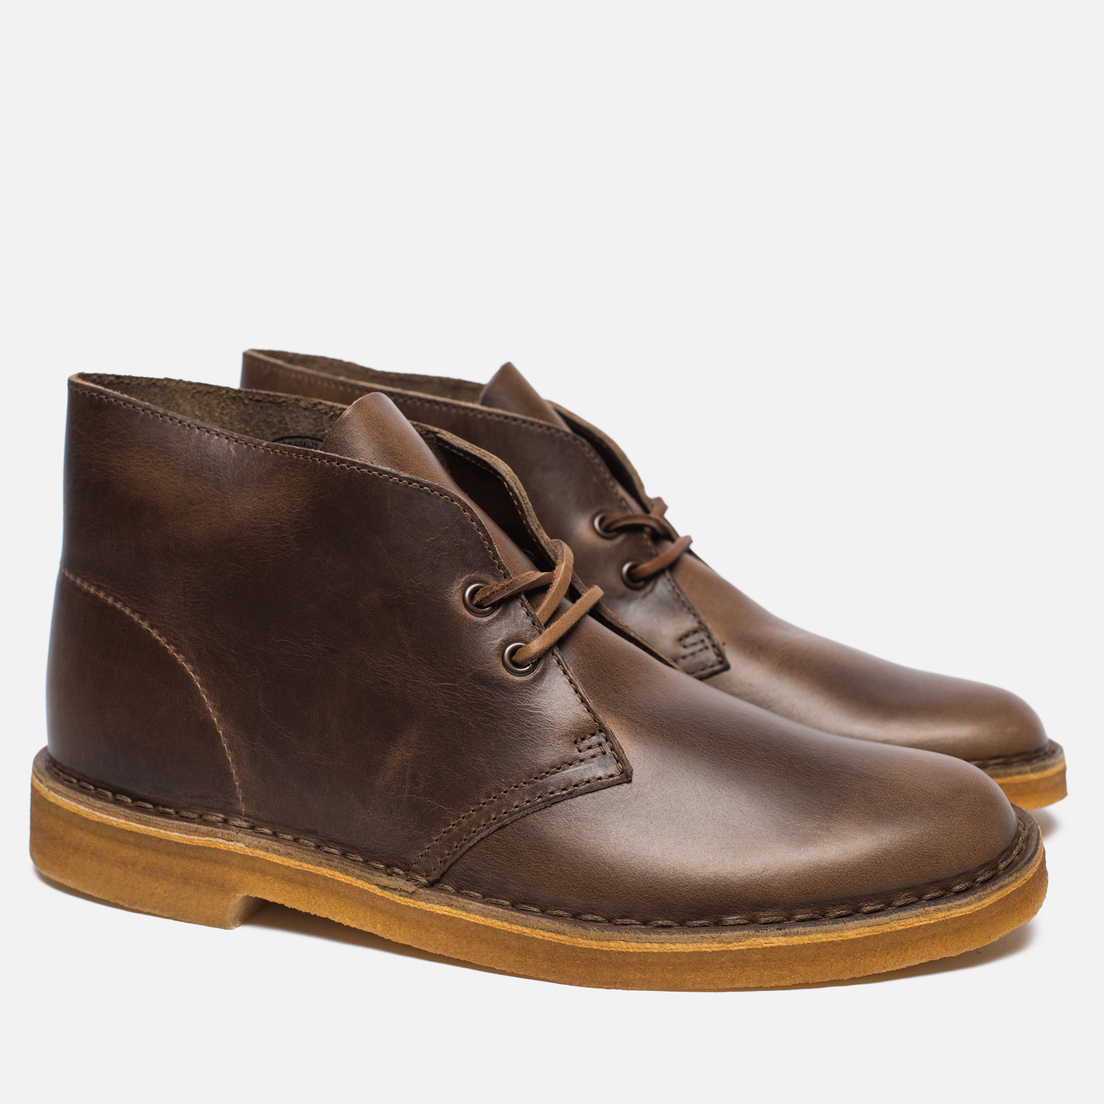 Clarks Originals Мужские ботинки Desert Boot Leather